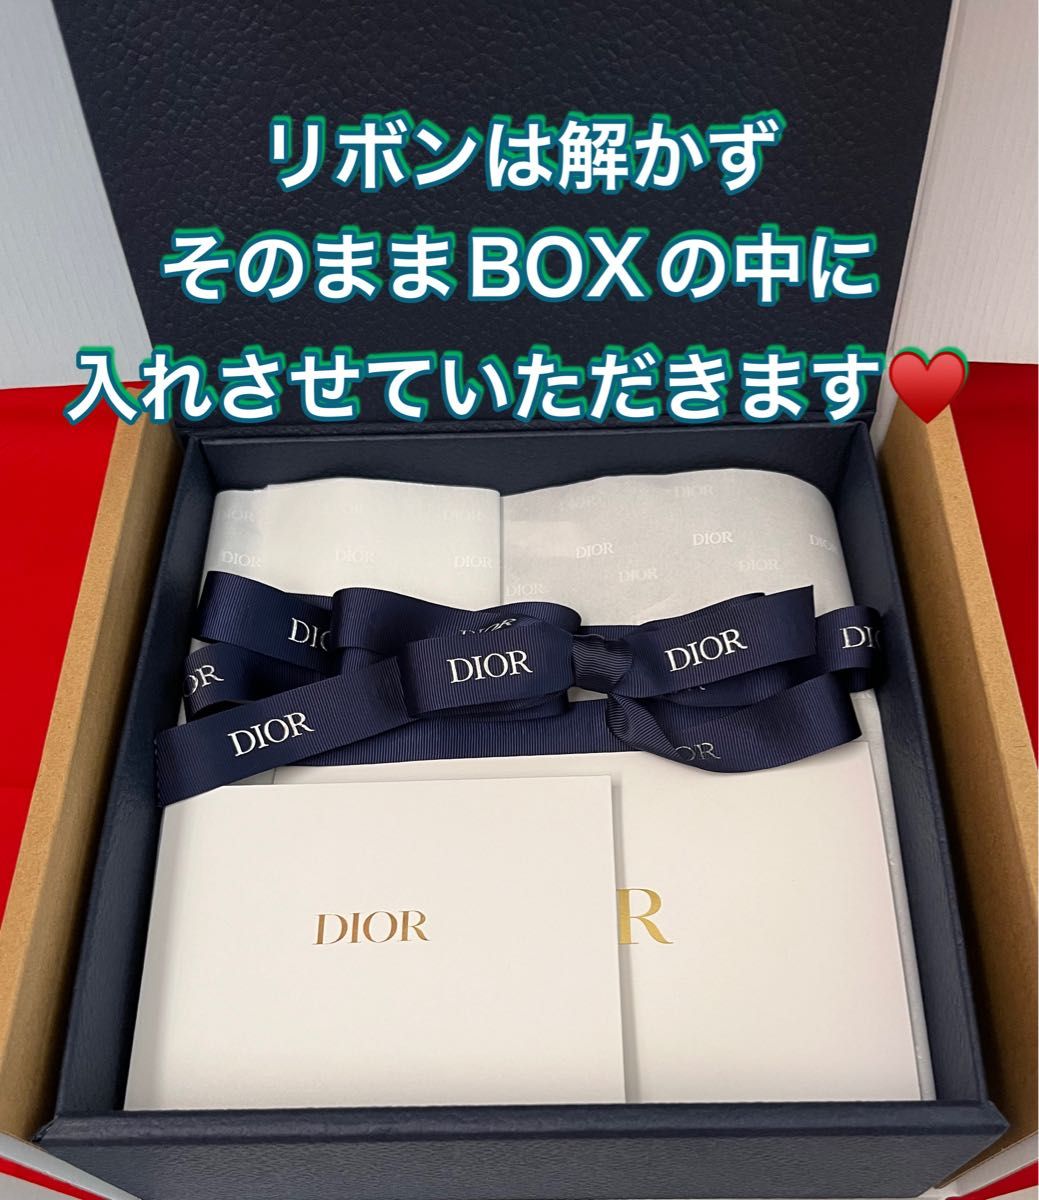 ディオール Dior メンズ限定 ギフトボックス ラッピングボックス リボン BOX 箱 空箱 ディオールオム プレゼント 梱包